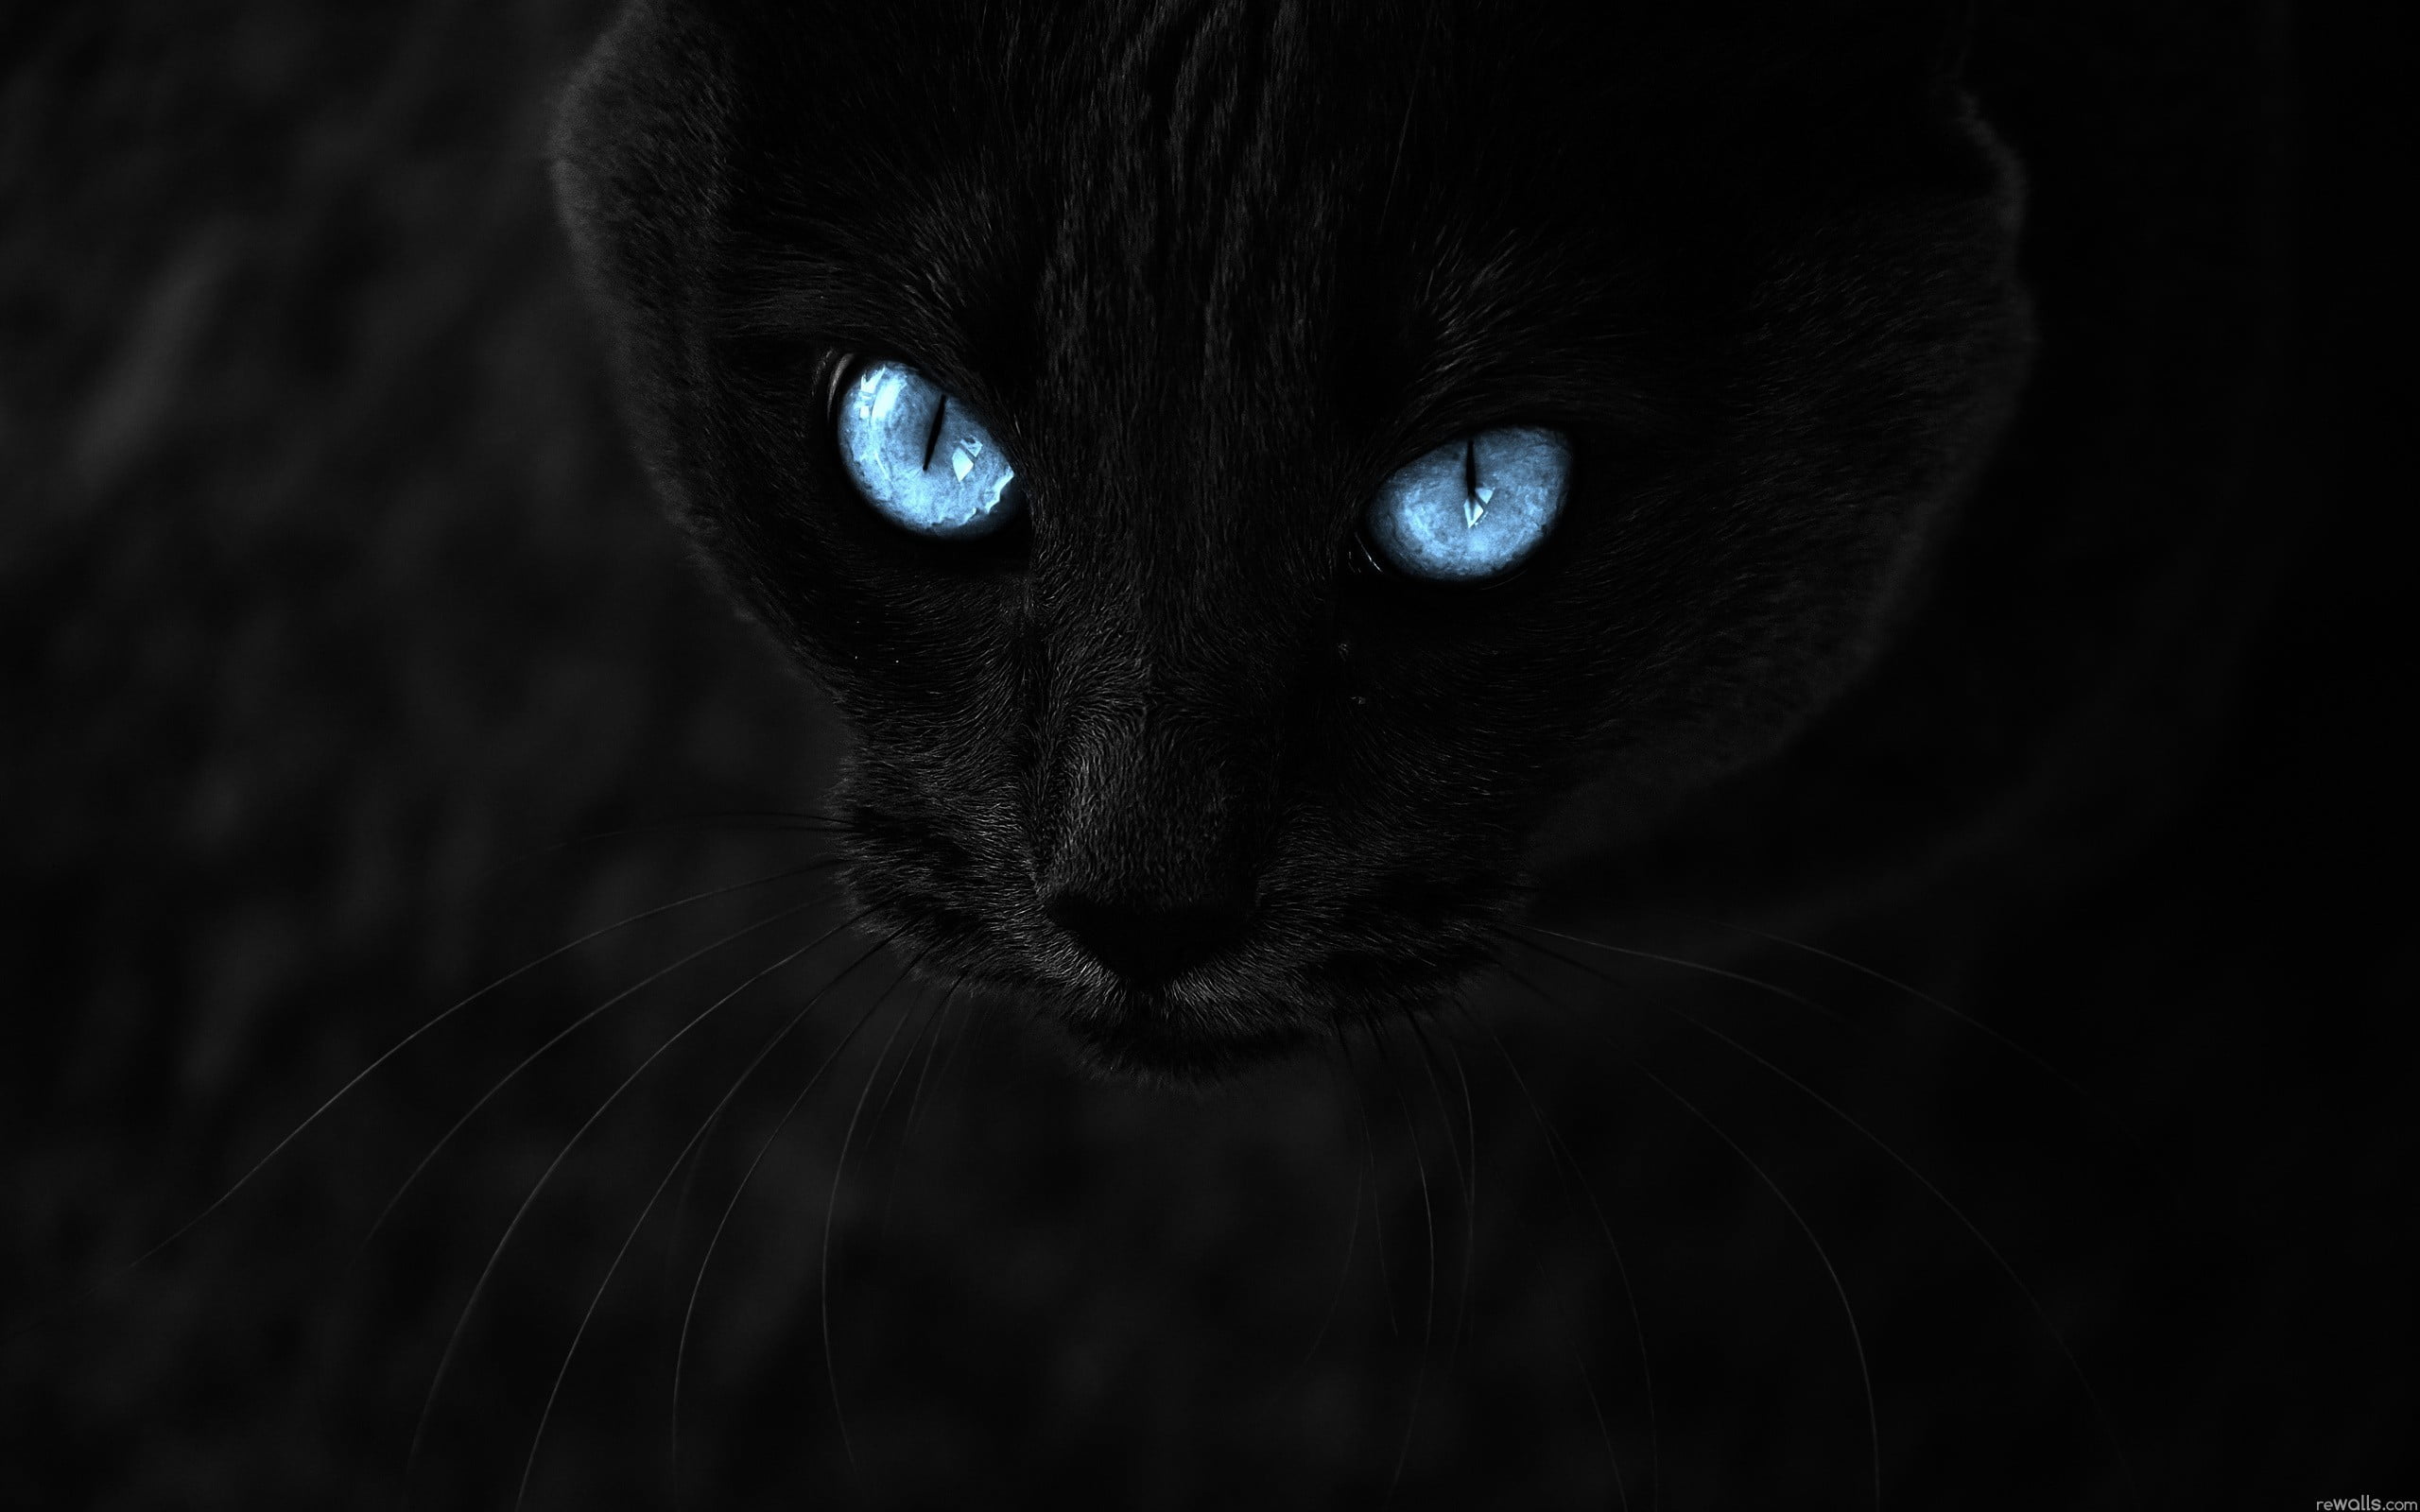 Russian blue cat's eyes